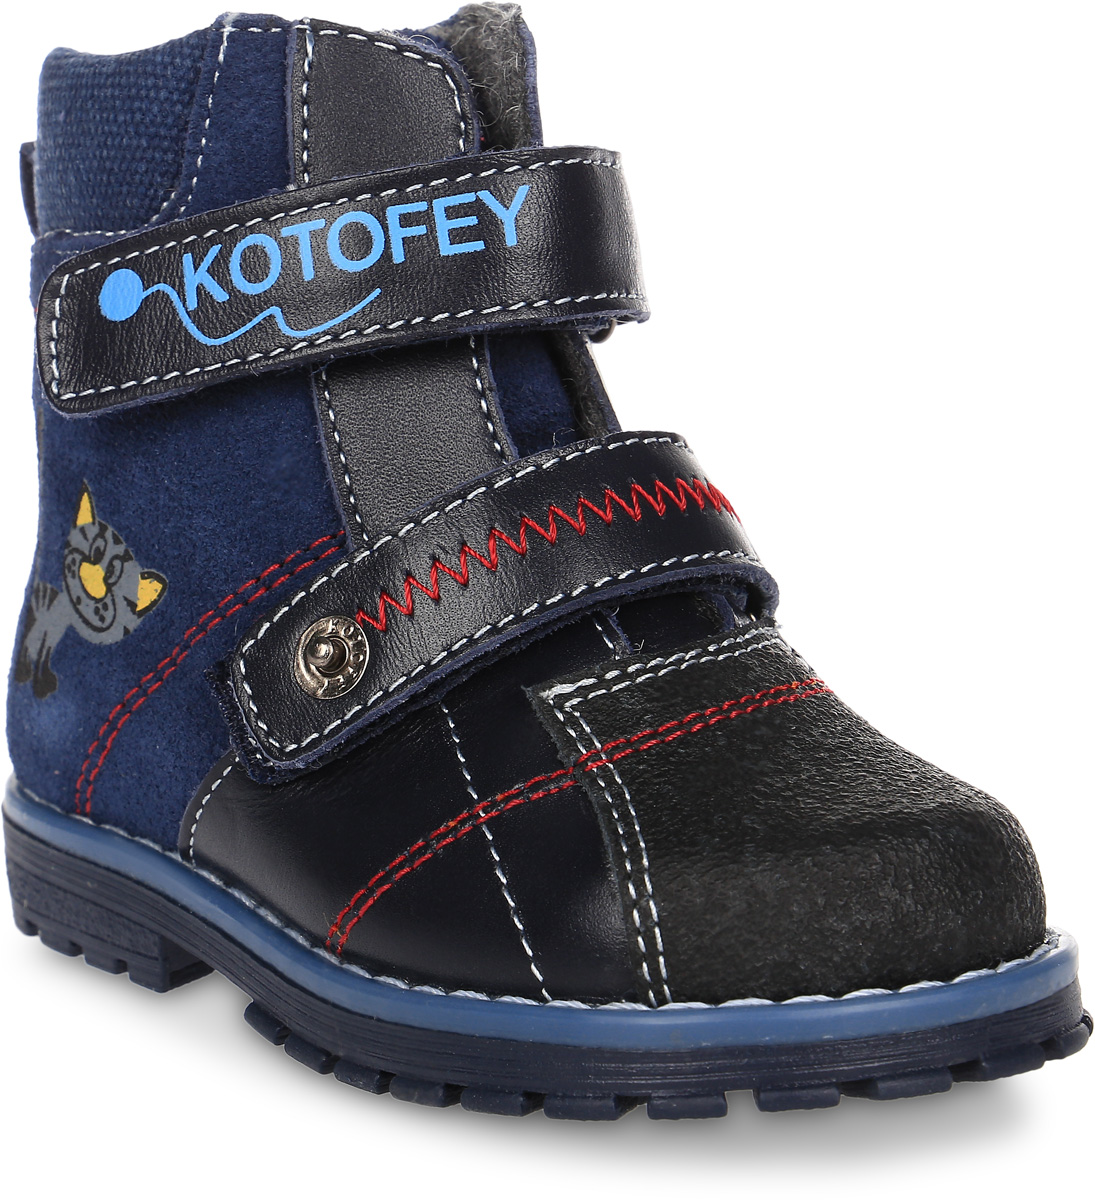 Ботинки для мальчика Котофей, цвет: синий. 152098-31. Размер 21